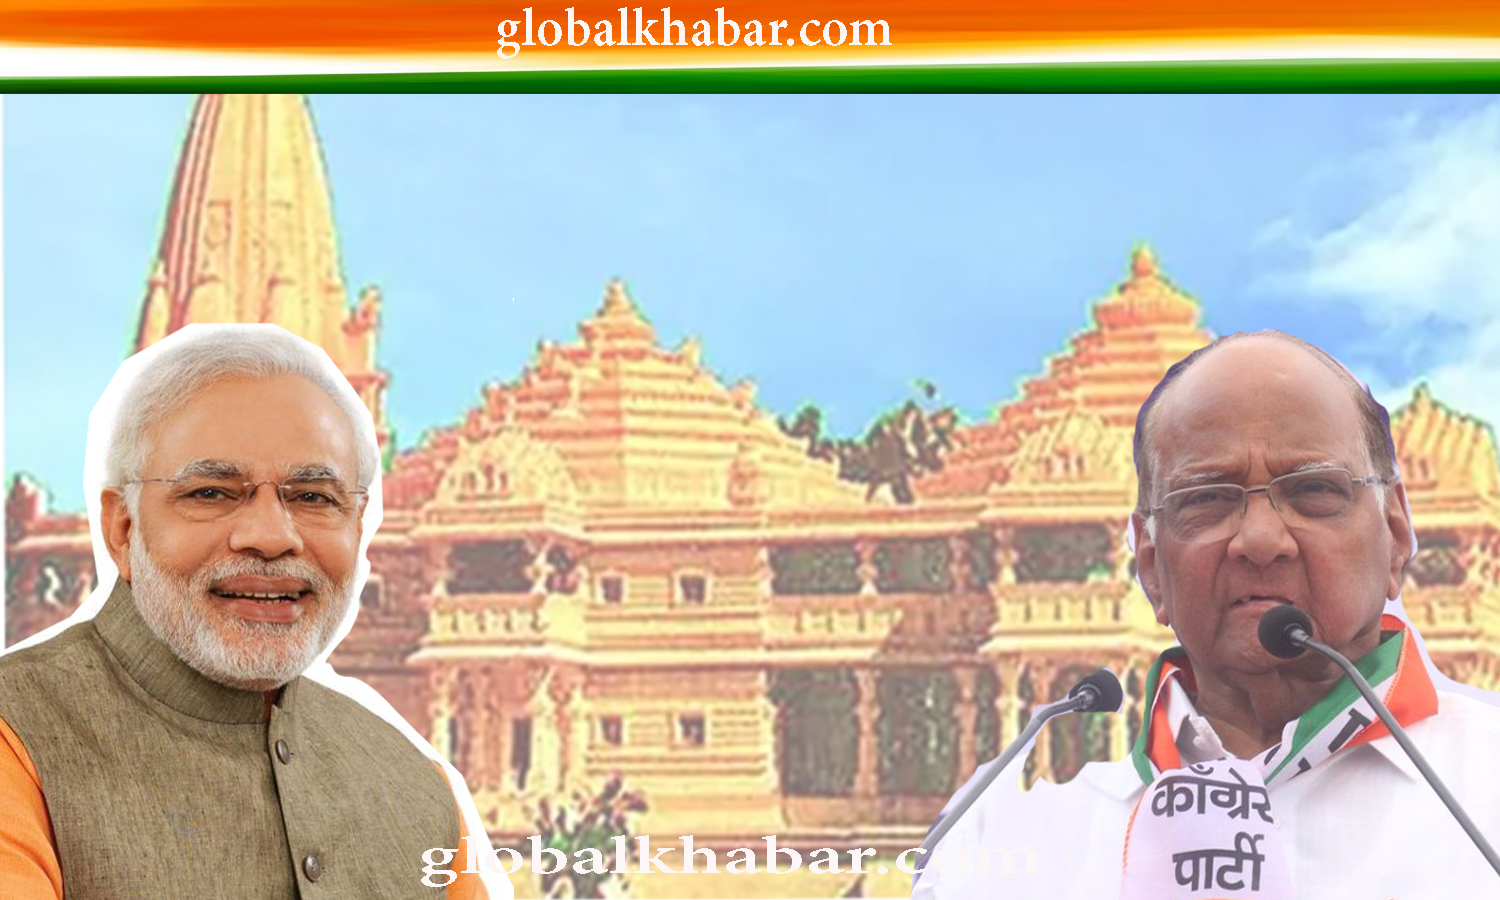 श्रीराम मंदिर : 5 अगस्त को प्रधानमंत्री मोदी के हाथों अयोध्या में भूमिपूजन संभव ! एनसीपी अध्यक्ष पवार ने कहा मंदिर बनाने से कोरोना नहीं जायेगा। आर्थिक स्थिति पर ध्यान देने की जरूरत। 